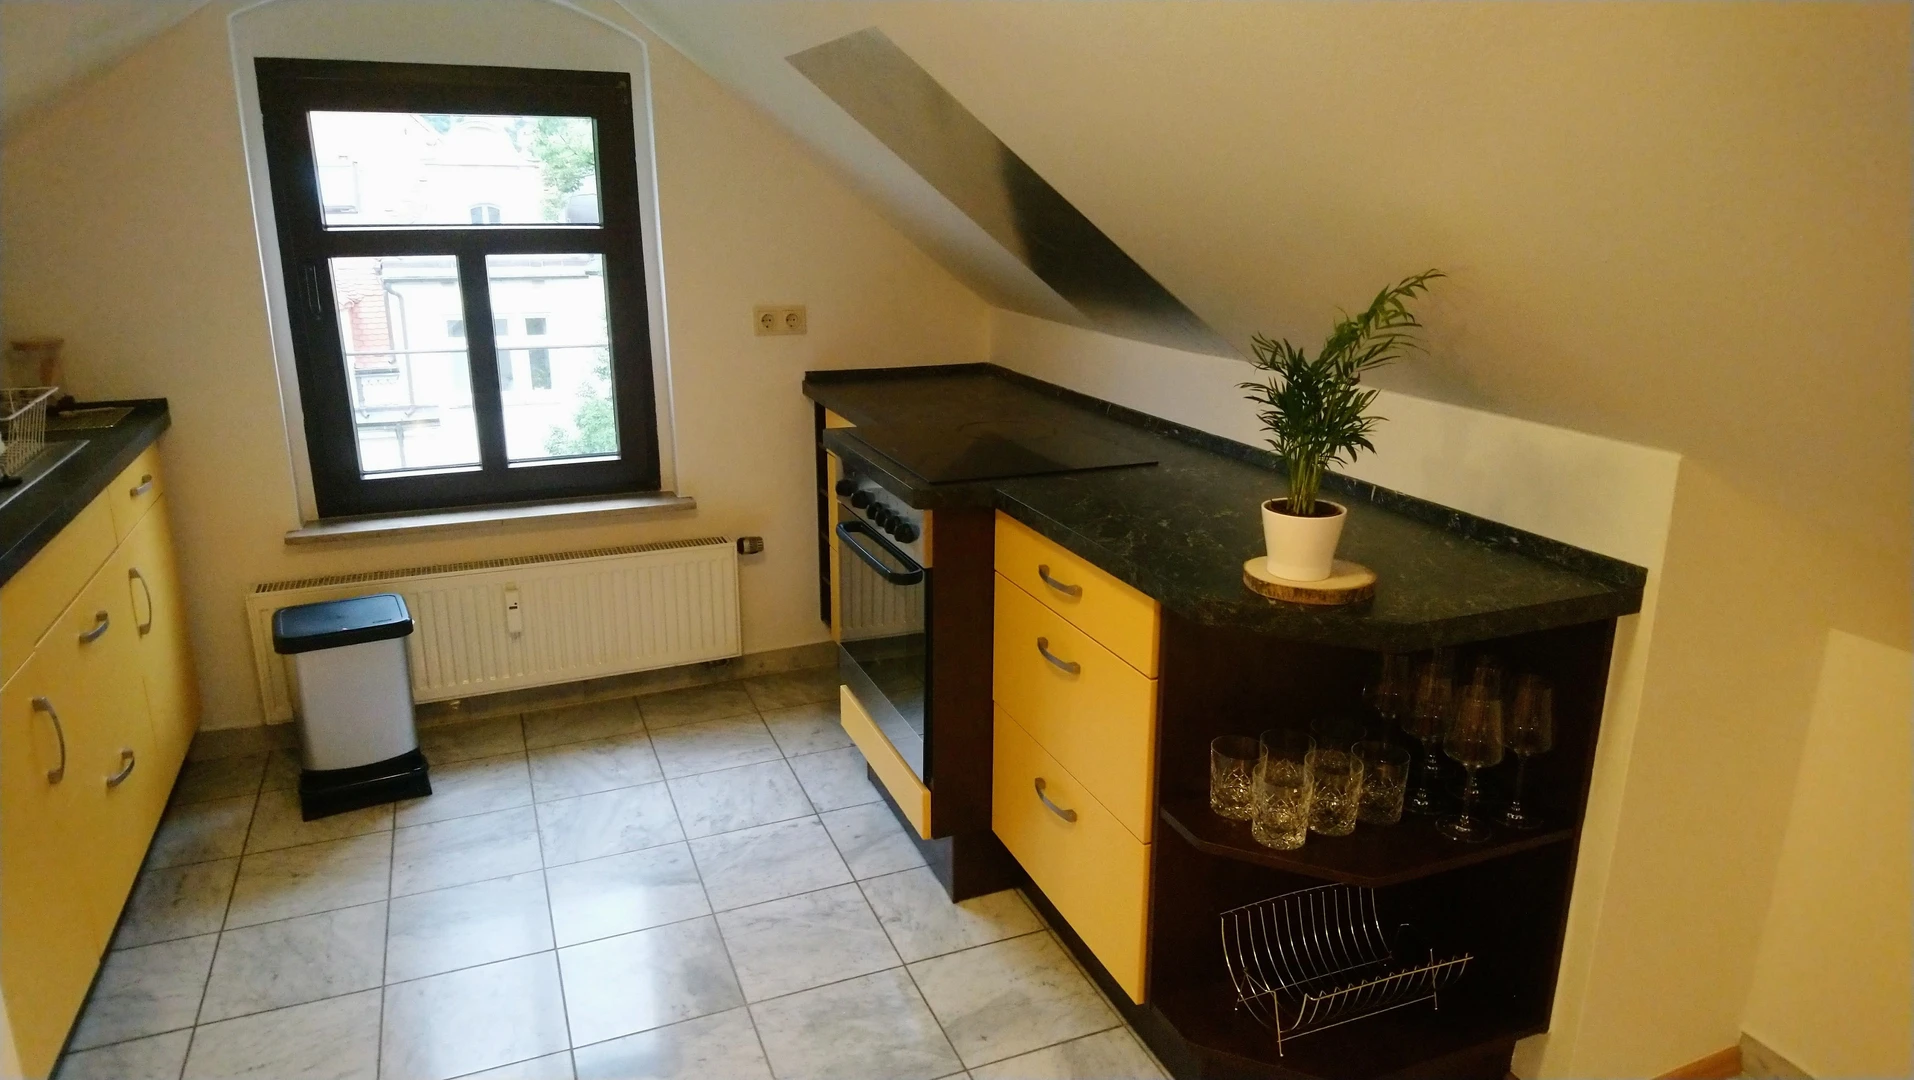 Chambre à louer dans un appartement en colocation à Dresde